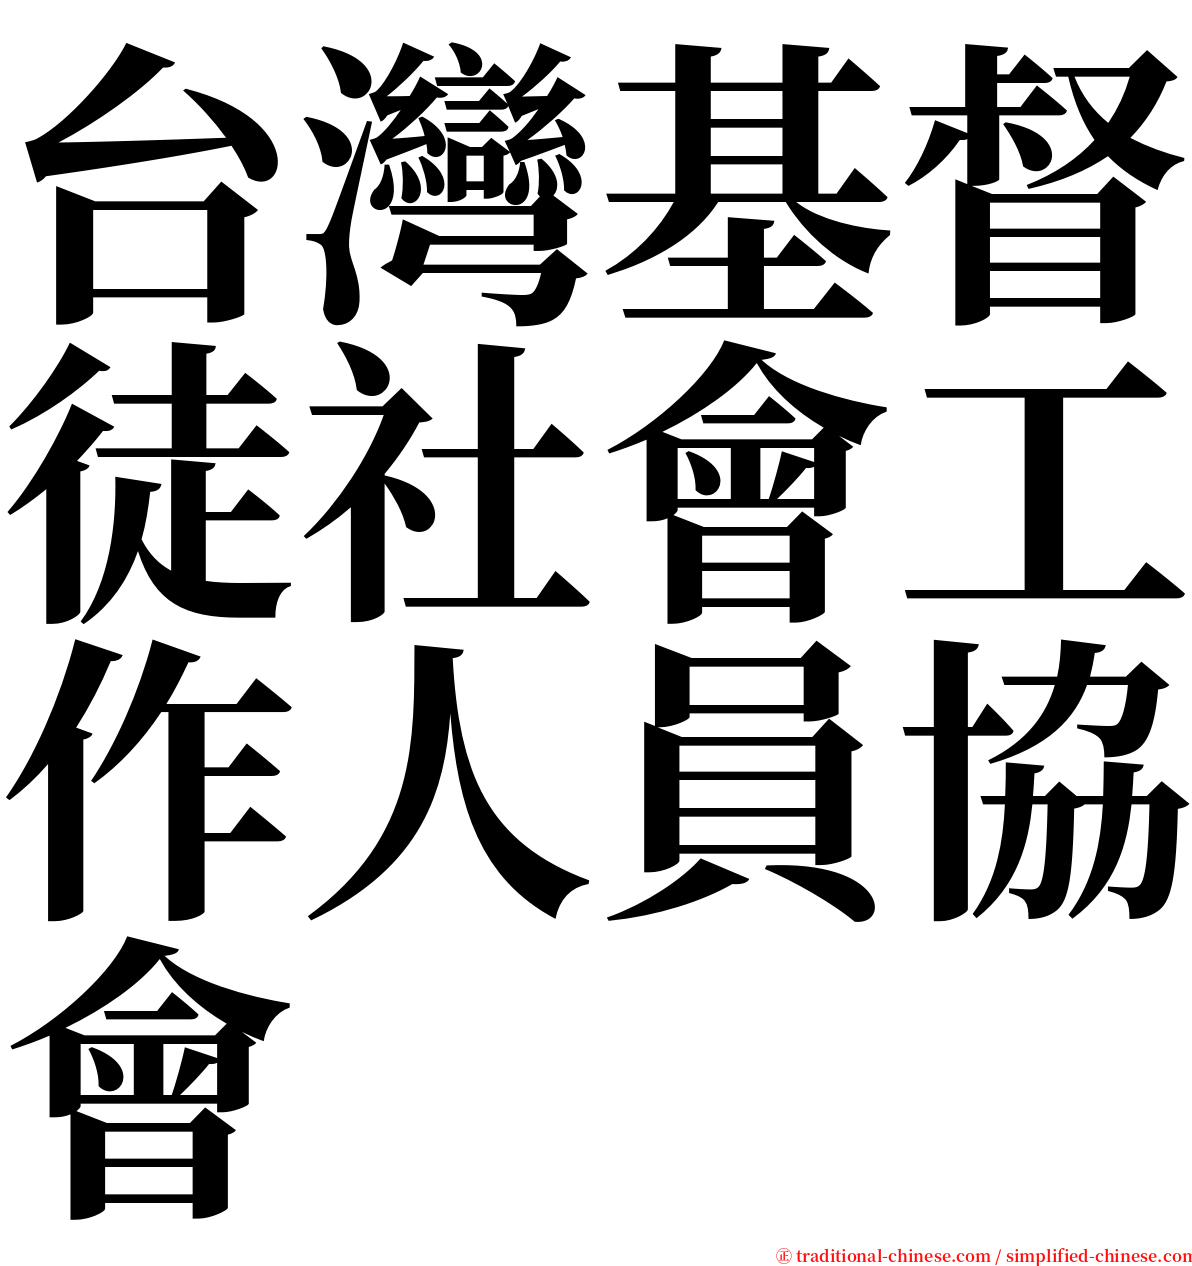 台灣基督徒社會工作人員協會 serif font